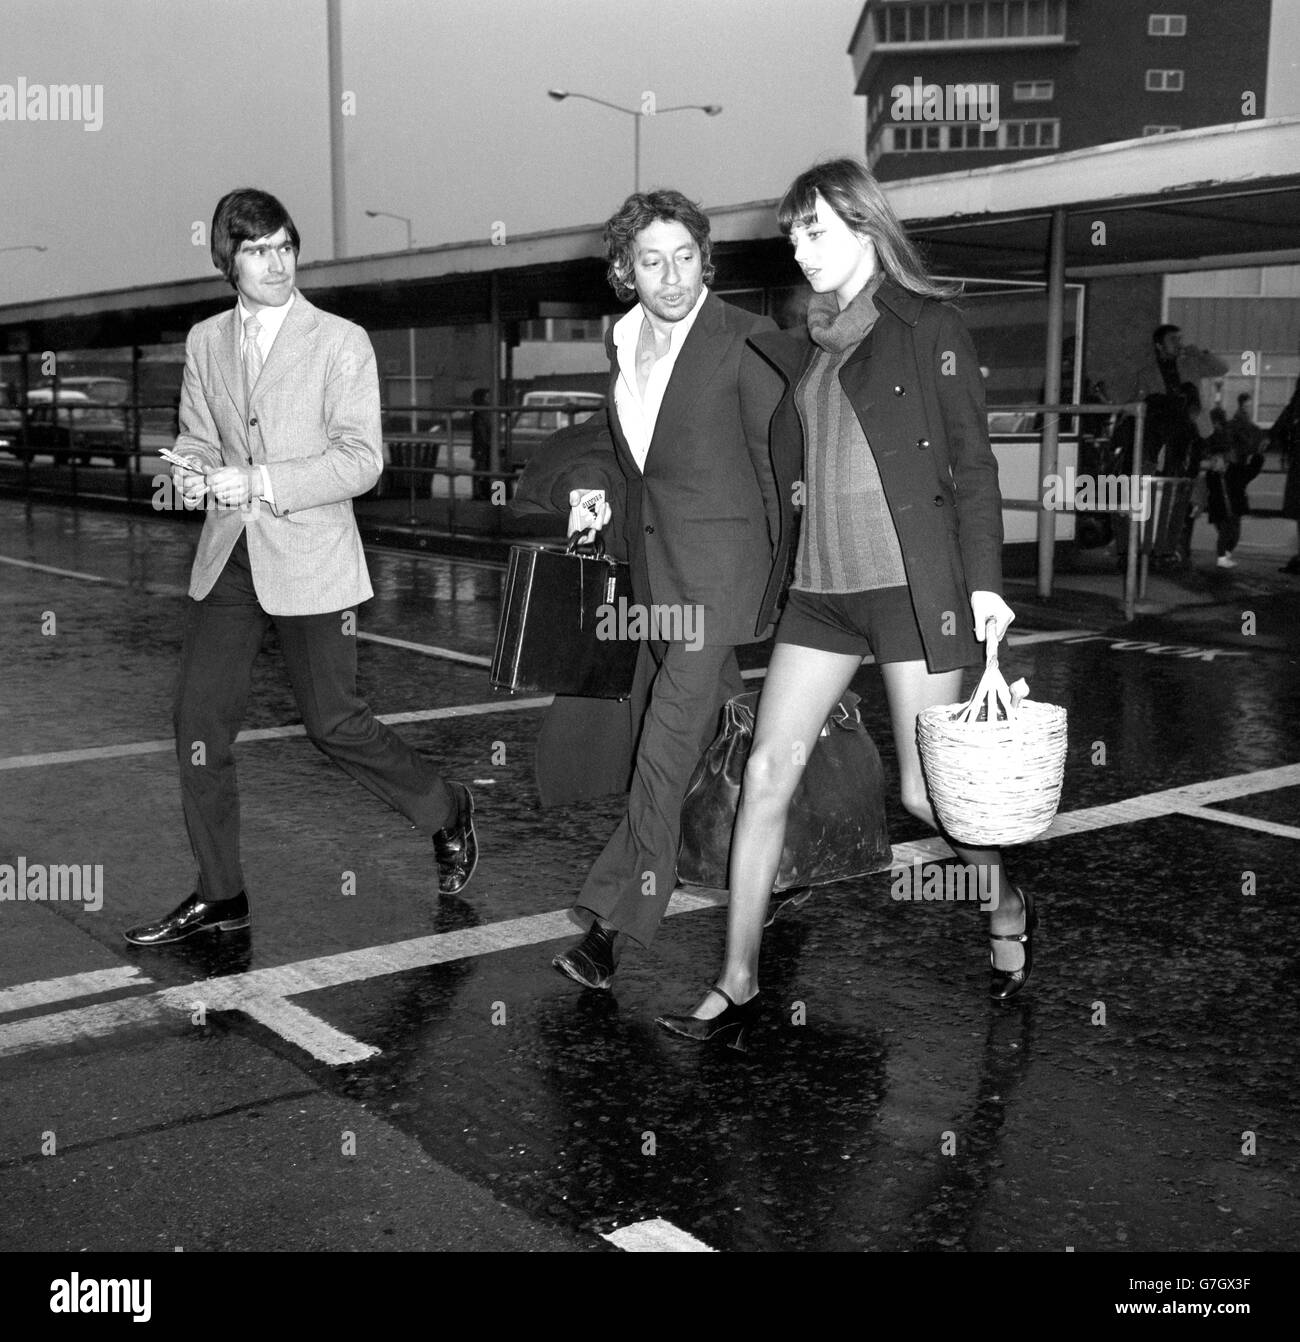 Jane Birkin und Serge Gainsbourg - Heathrow Airport, London. Die Schauspielerin Jane Birkin und Serge Gainsbourg am Londoner Flughafen Heathrow nach ihrer Ankunft aus Paris. Stockfoto